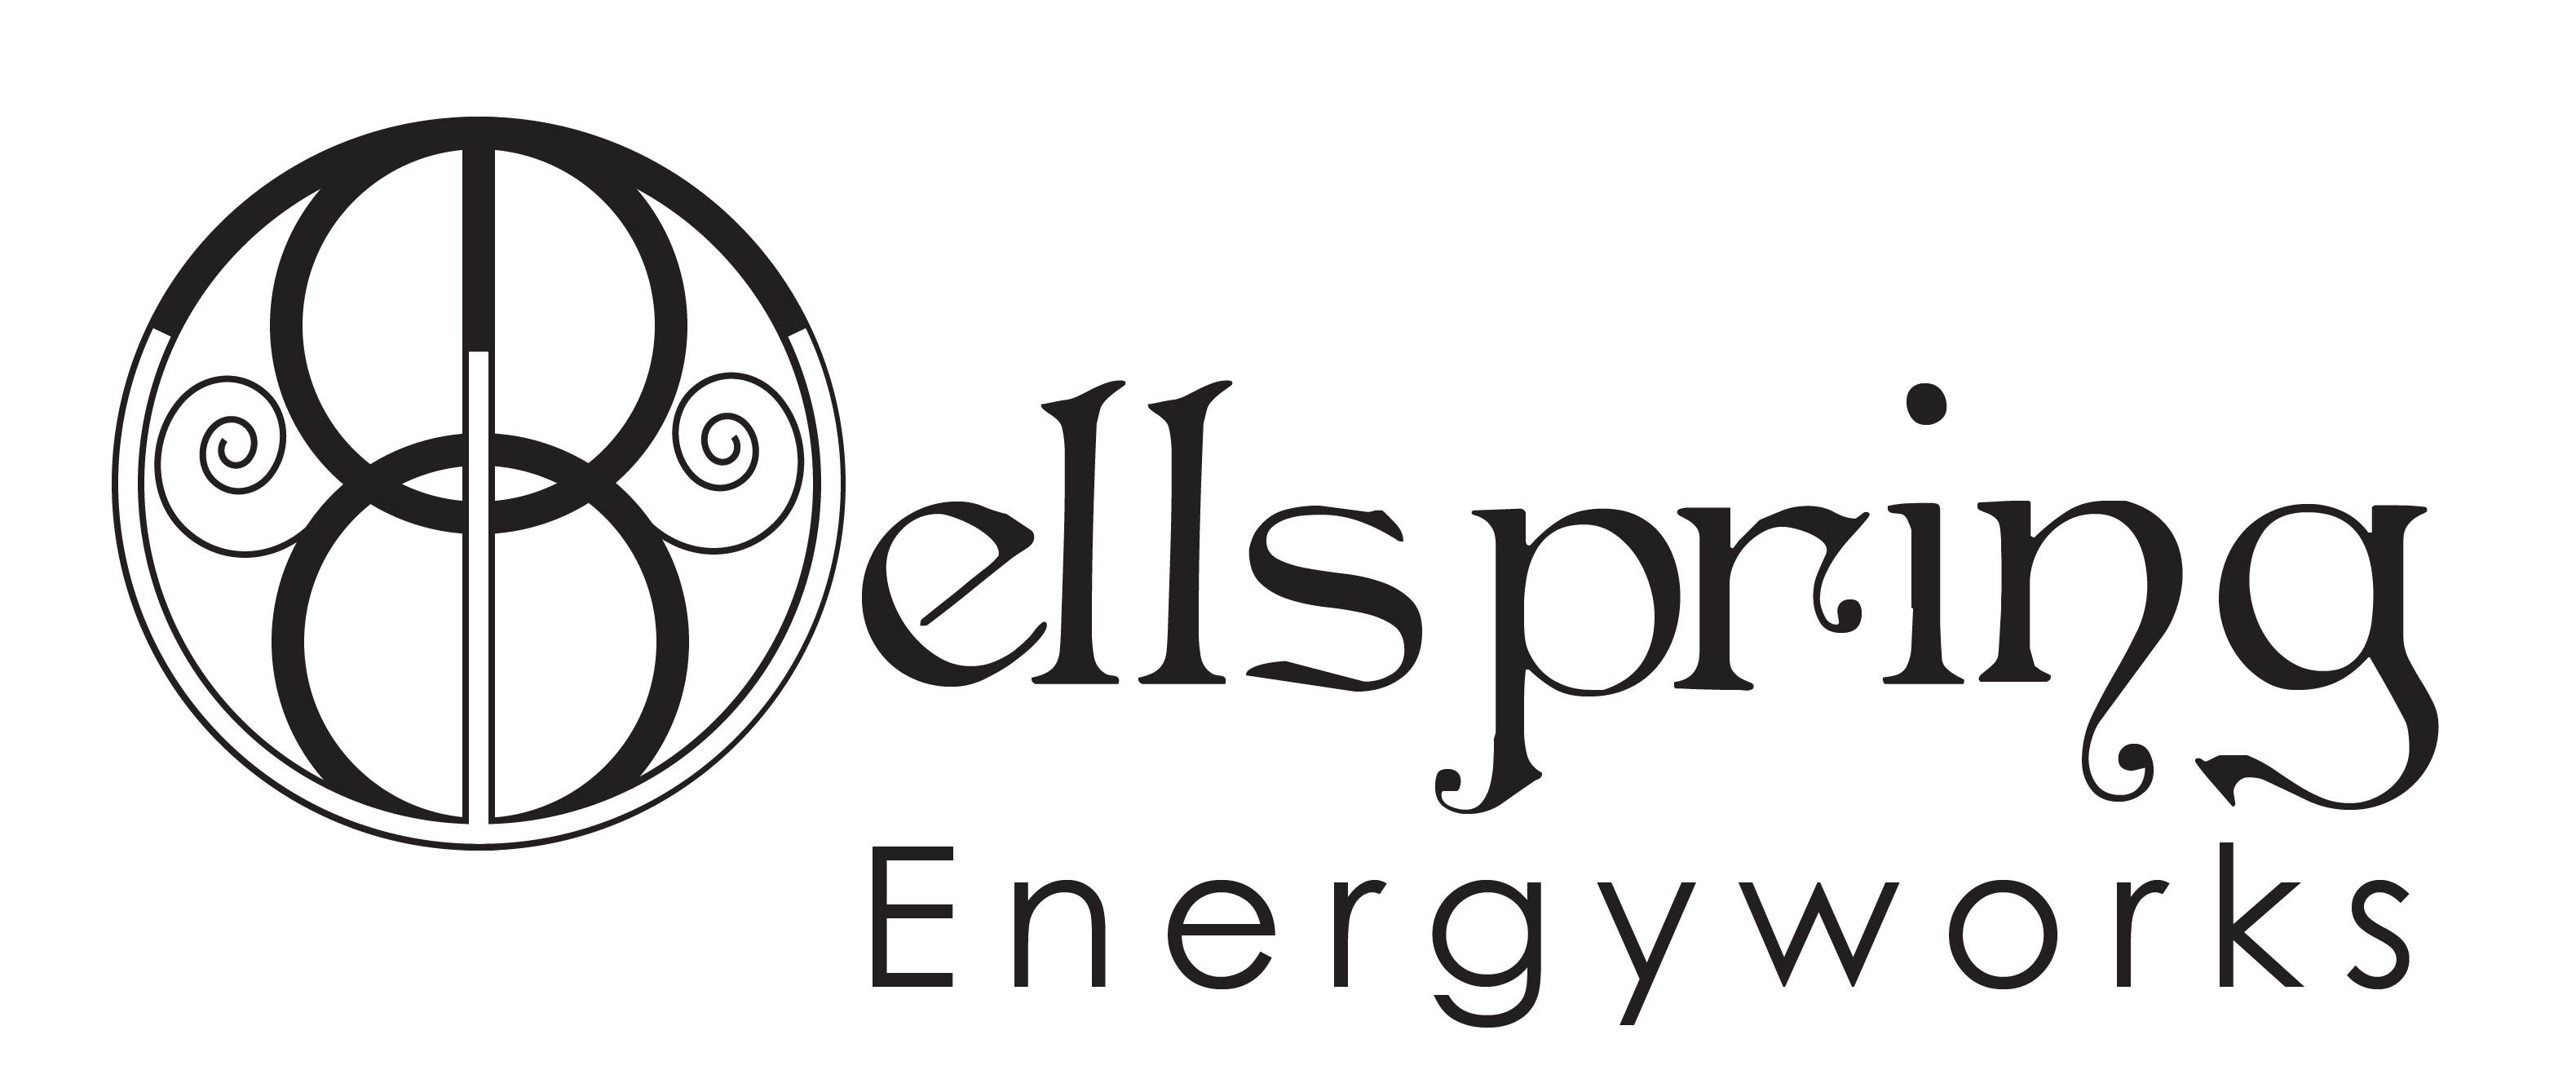 Wellspring Energyworks